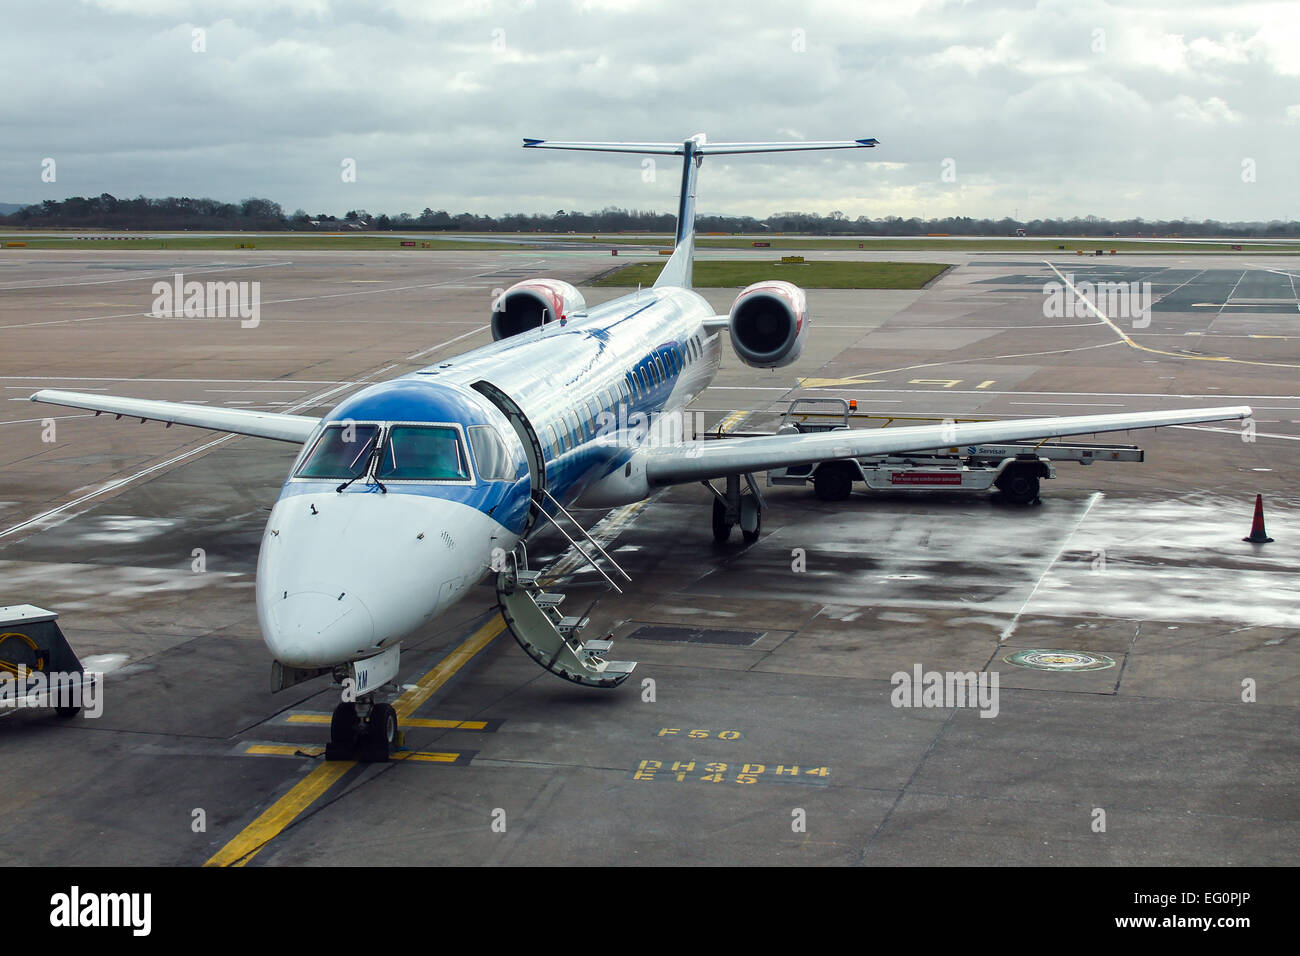 Bmi Regional Embraer 145 espera a los pasajeros en el aeropuerto de Manchester. Foto de stock